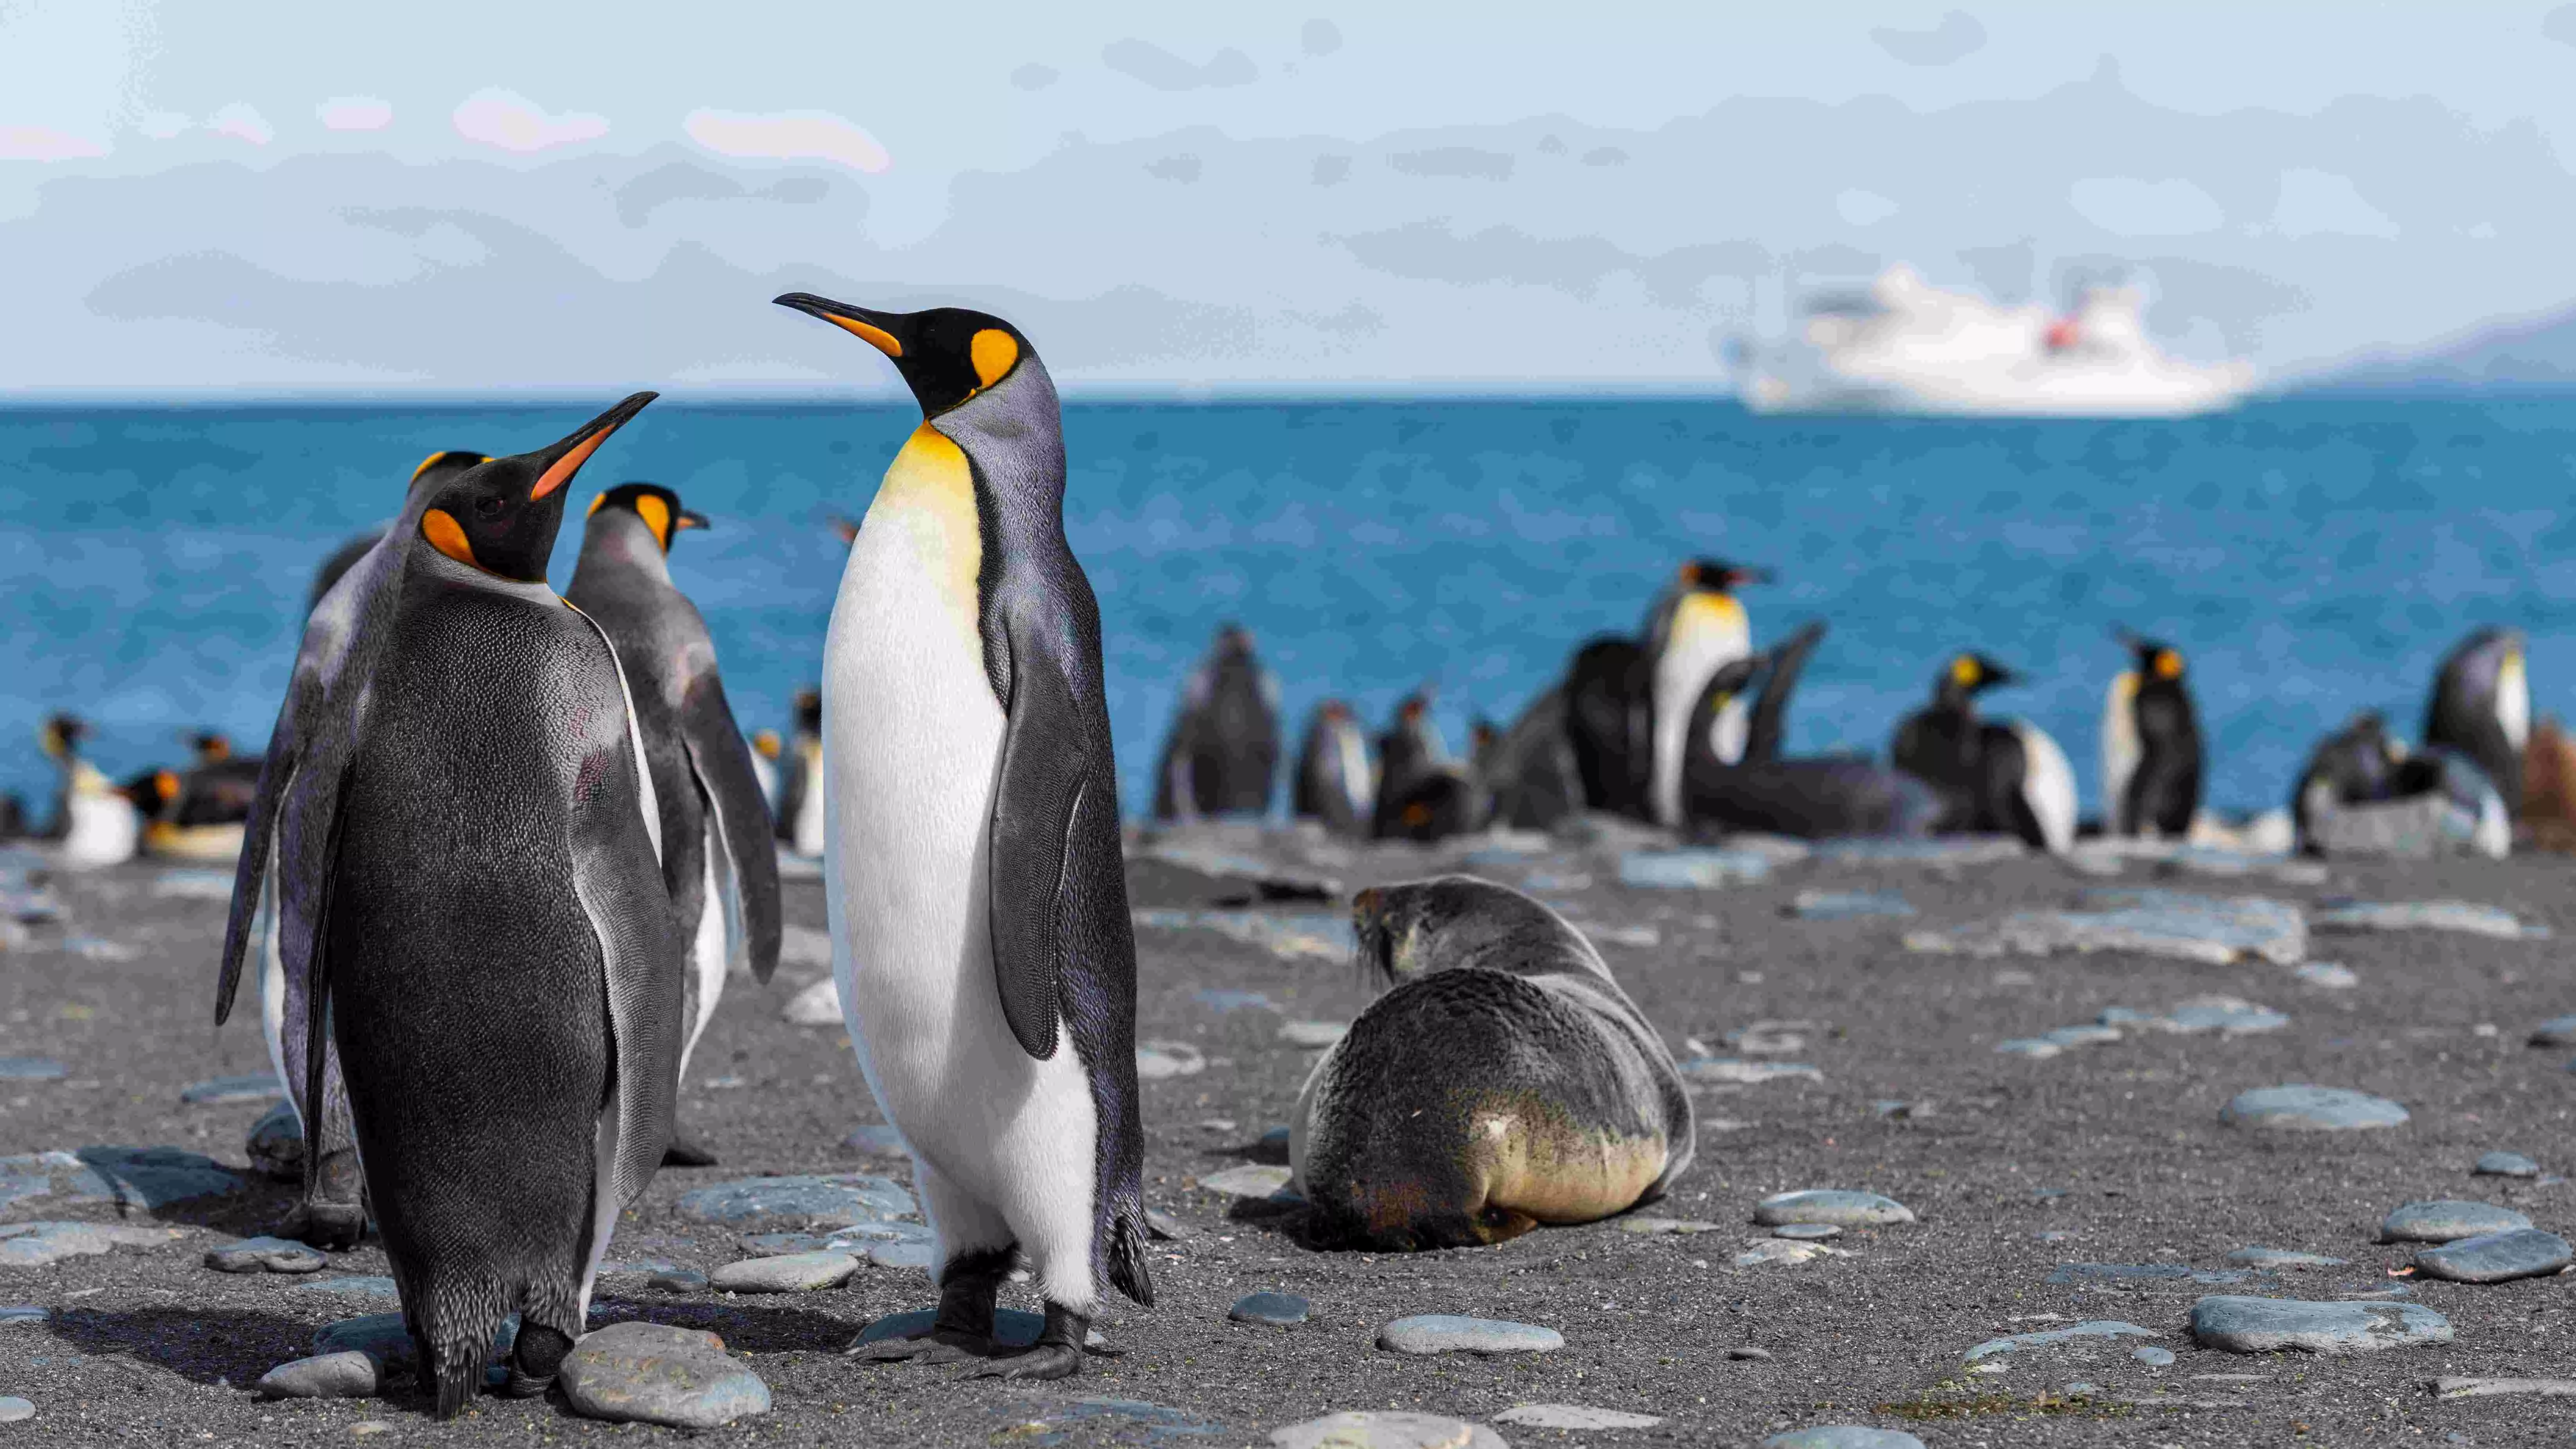 Penguins in peril